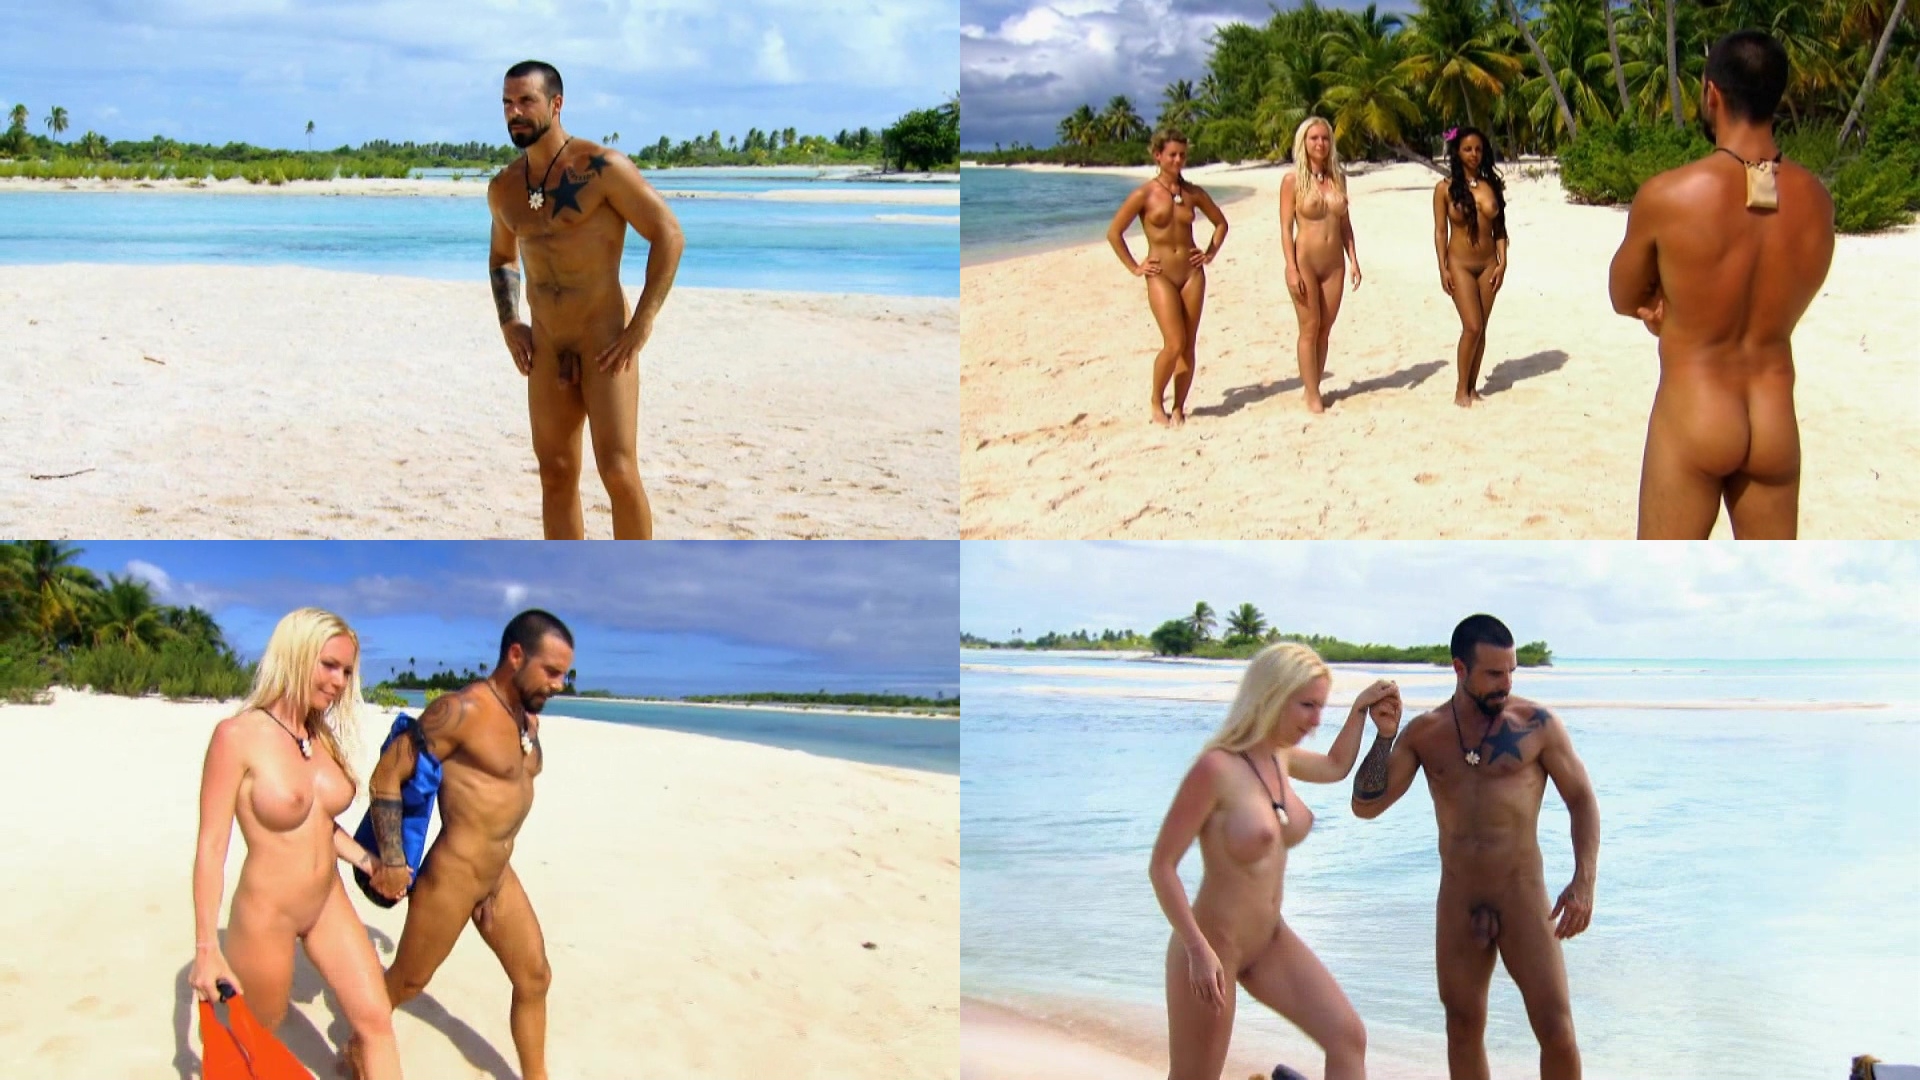 Isola dei famosi naked